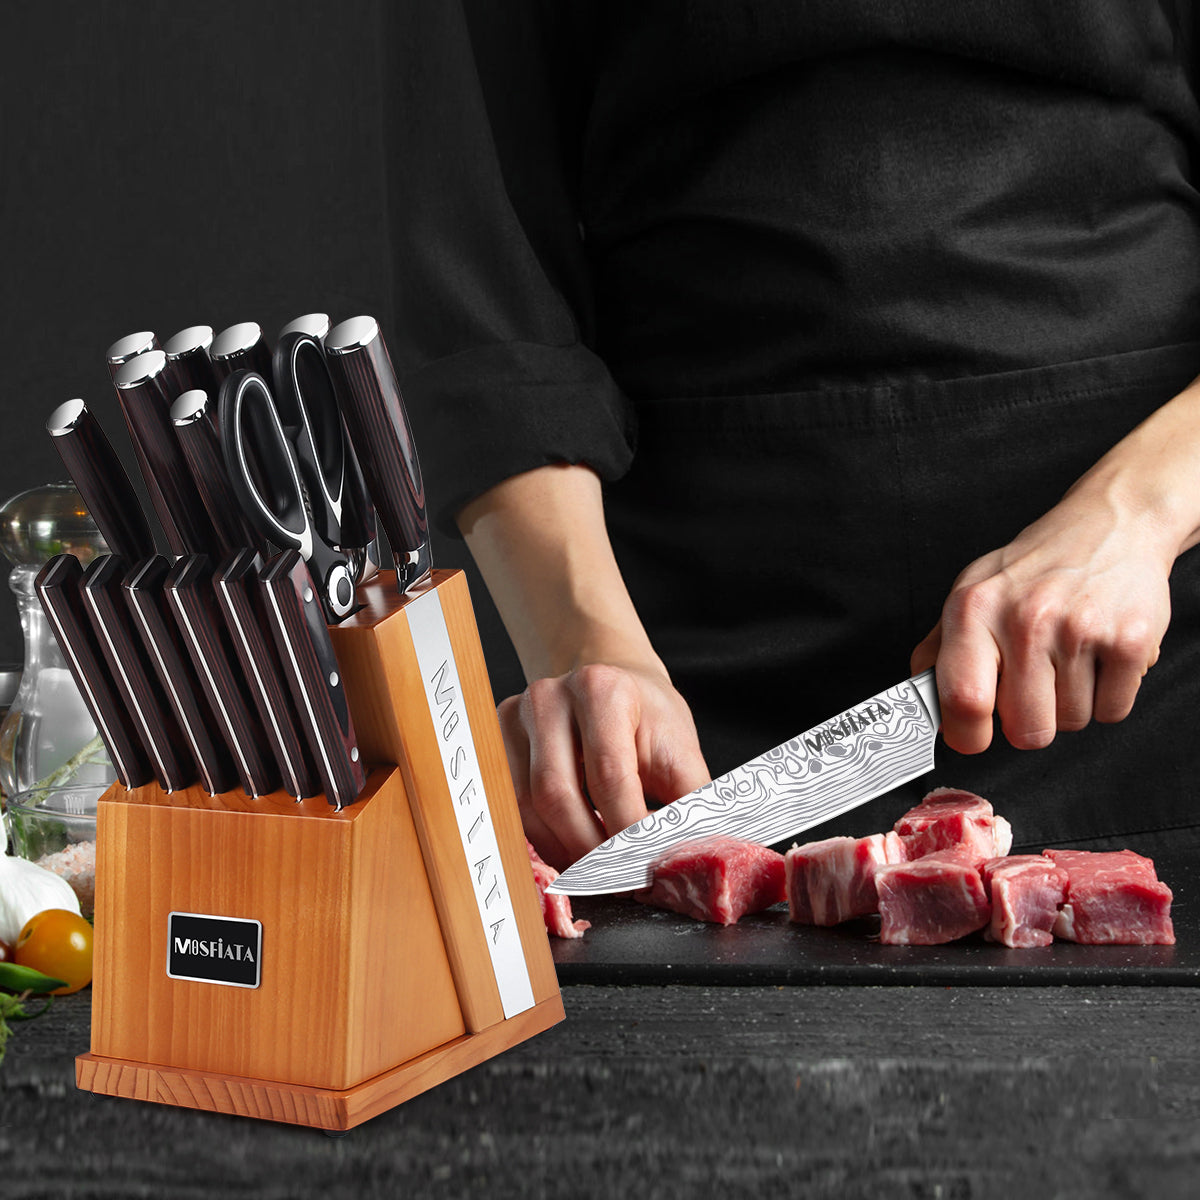 Mosfiata Chef's Knife: Slice Like a Pro!